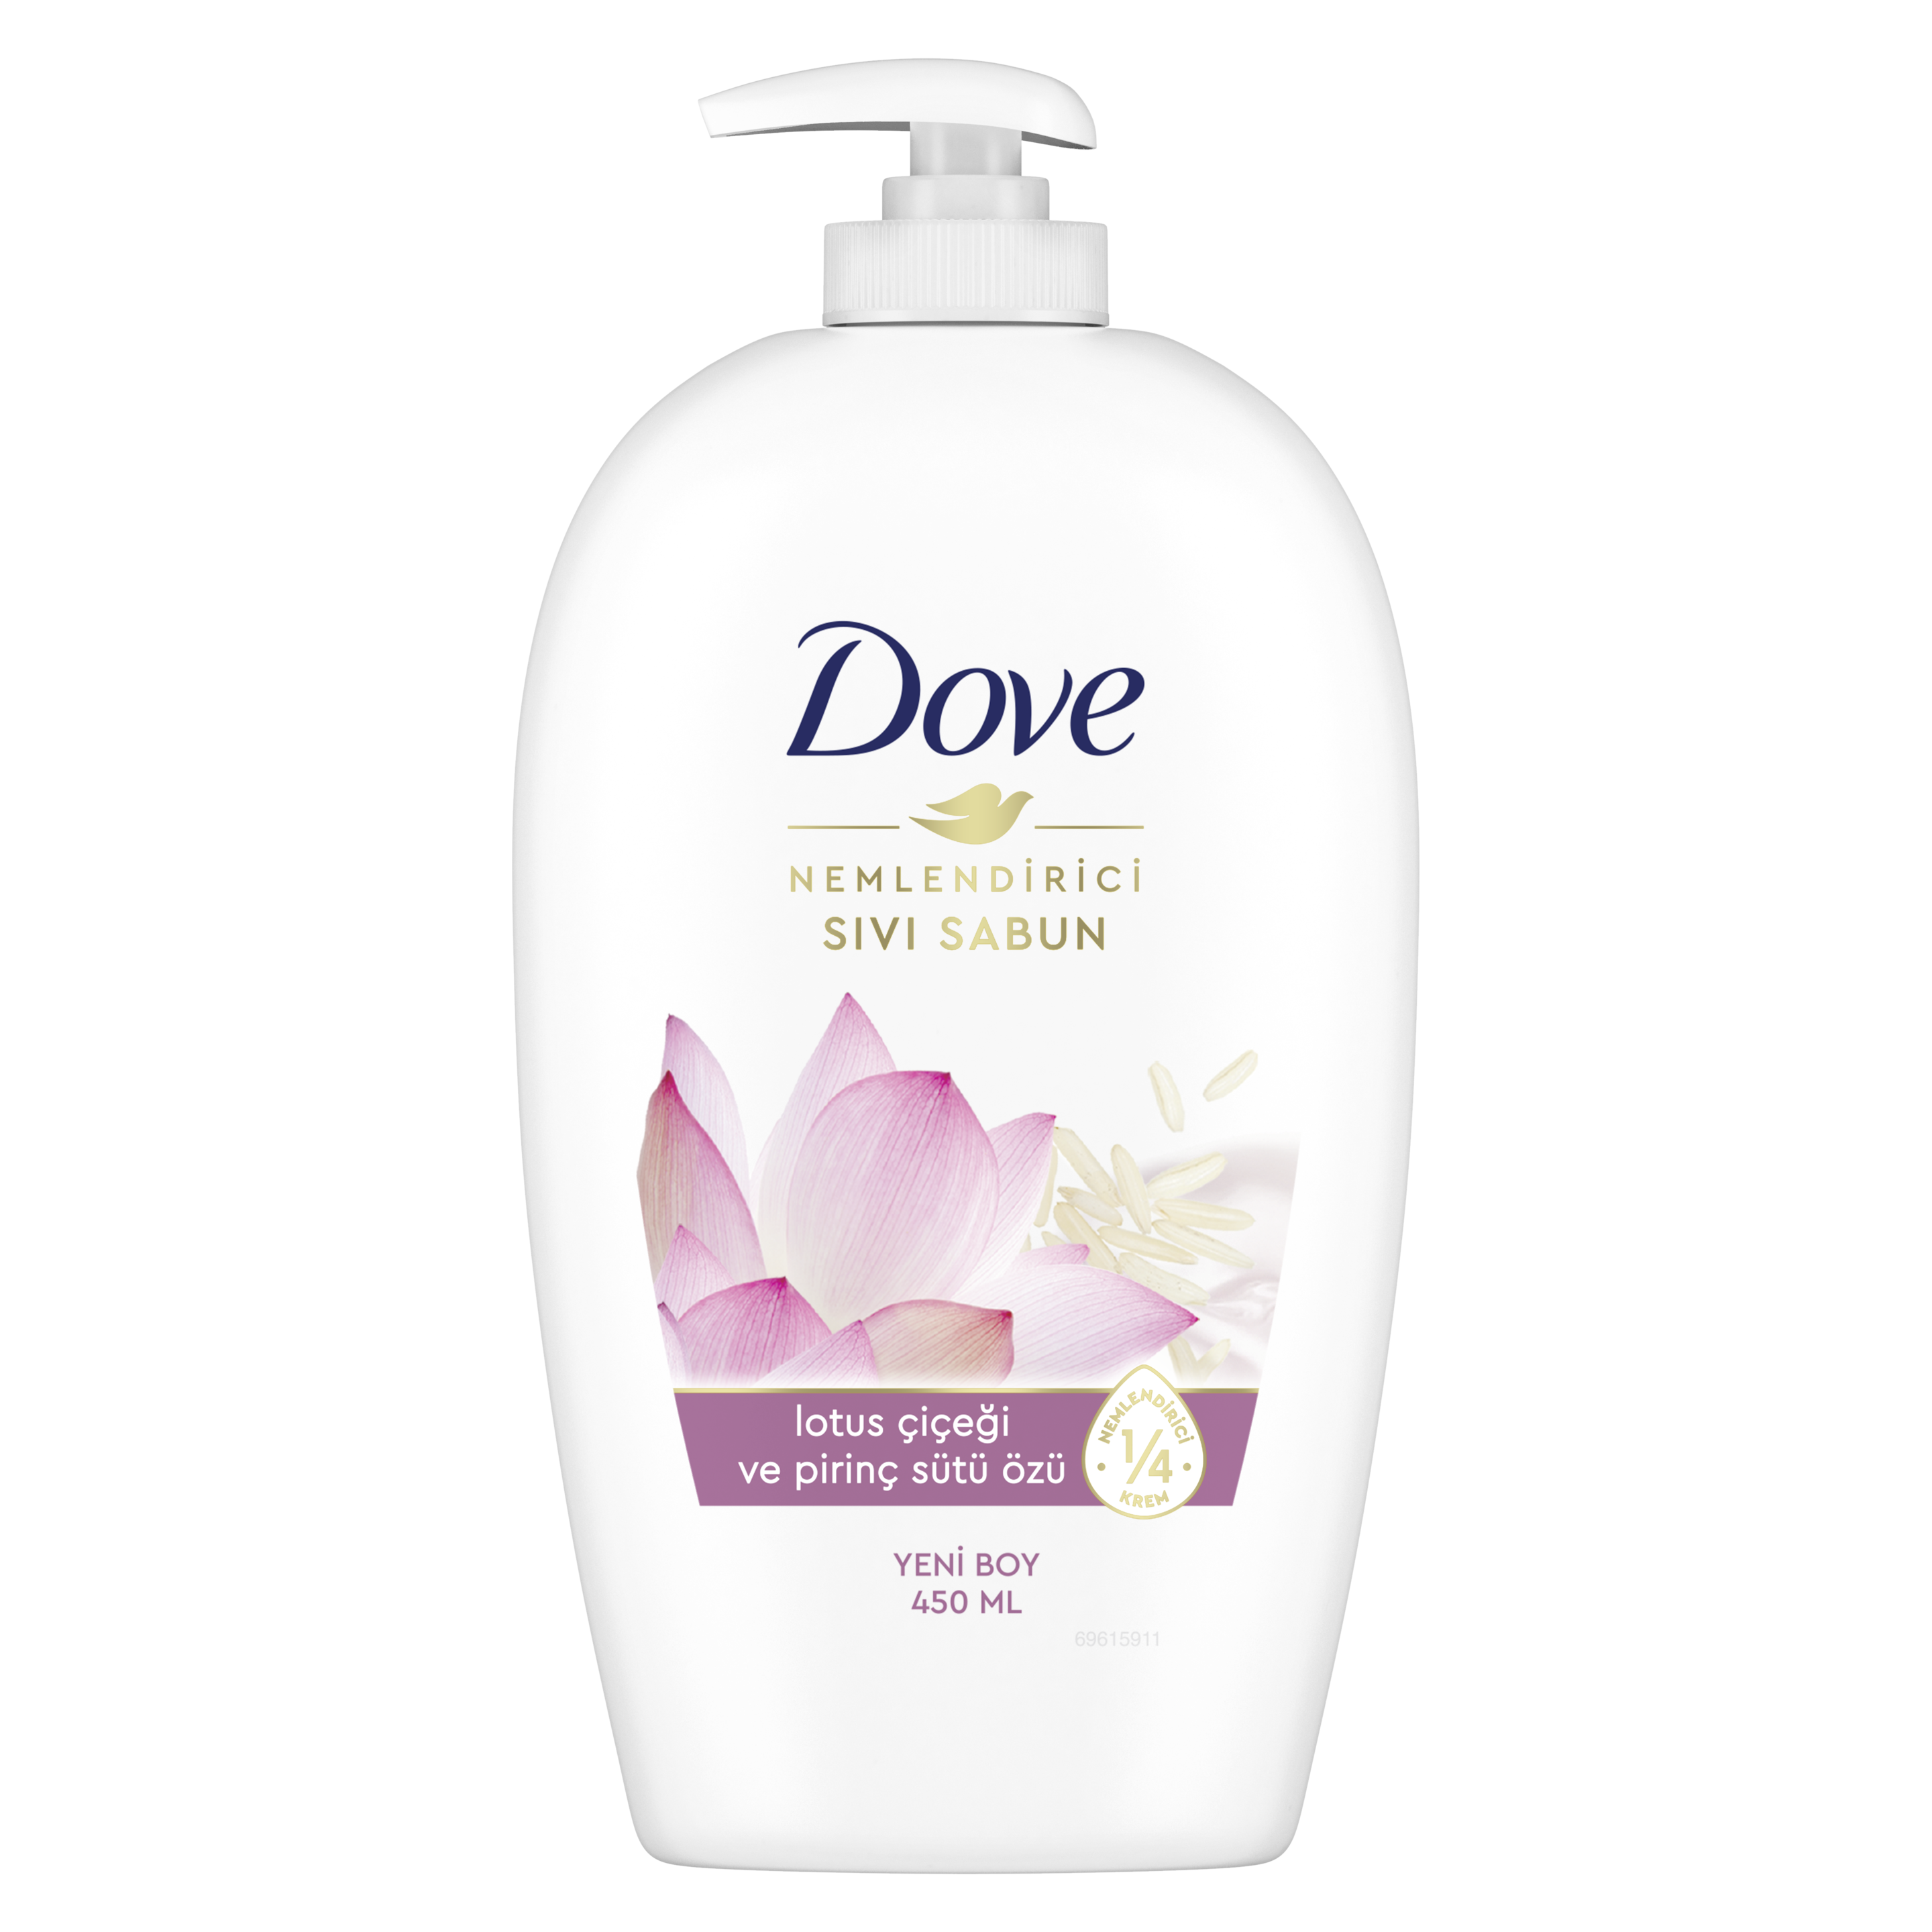 Dove Lotus Çiçeği ve Pirinç Özü Nemlendirici Sıvı Sabun 450 ml